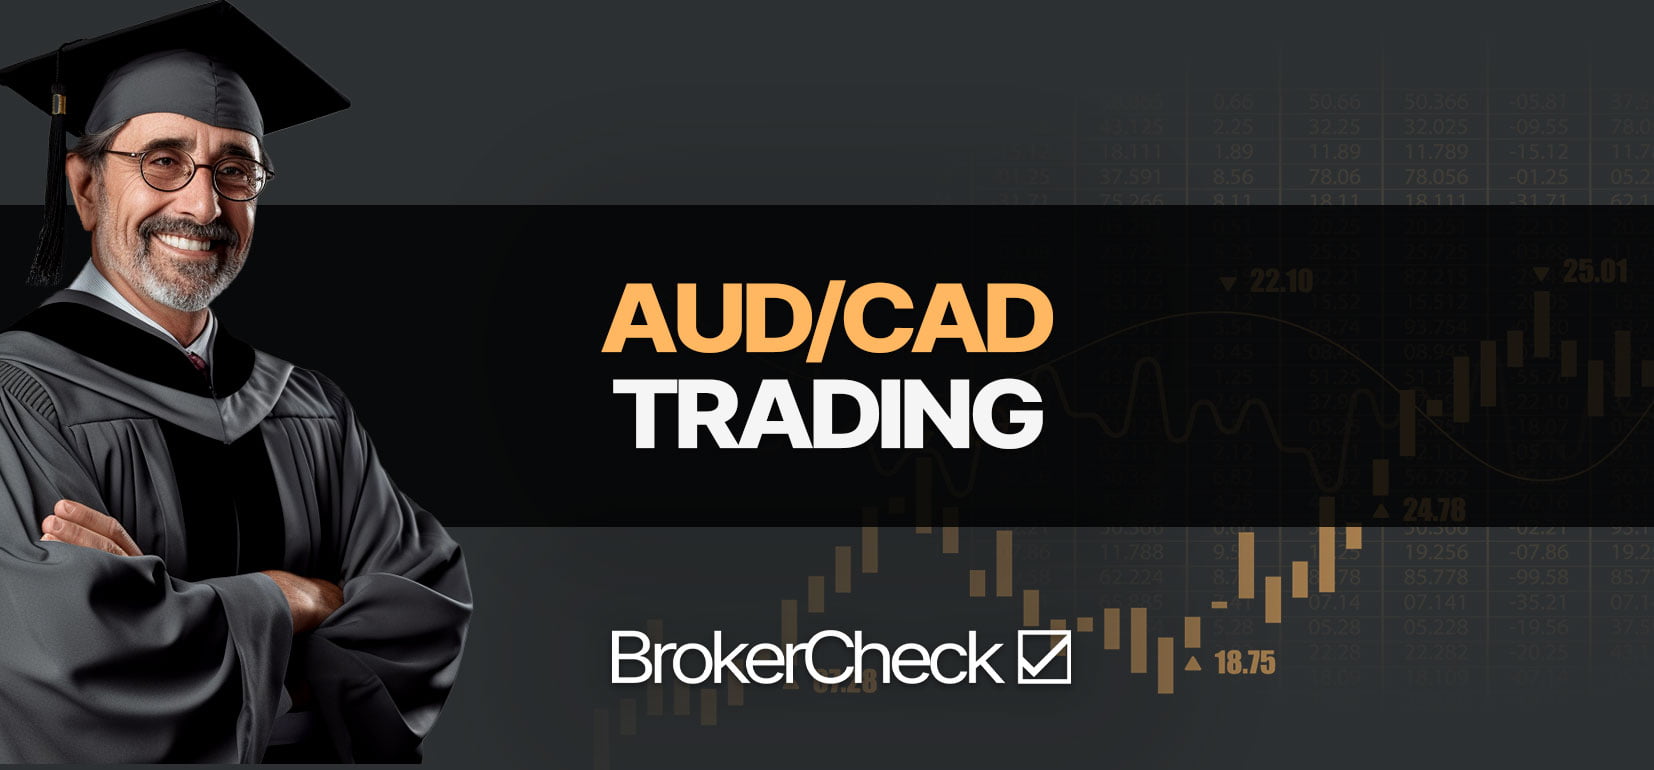 How To Trade AUD/CAD सफलतापूर्वक